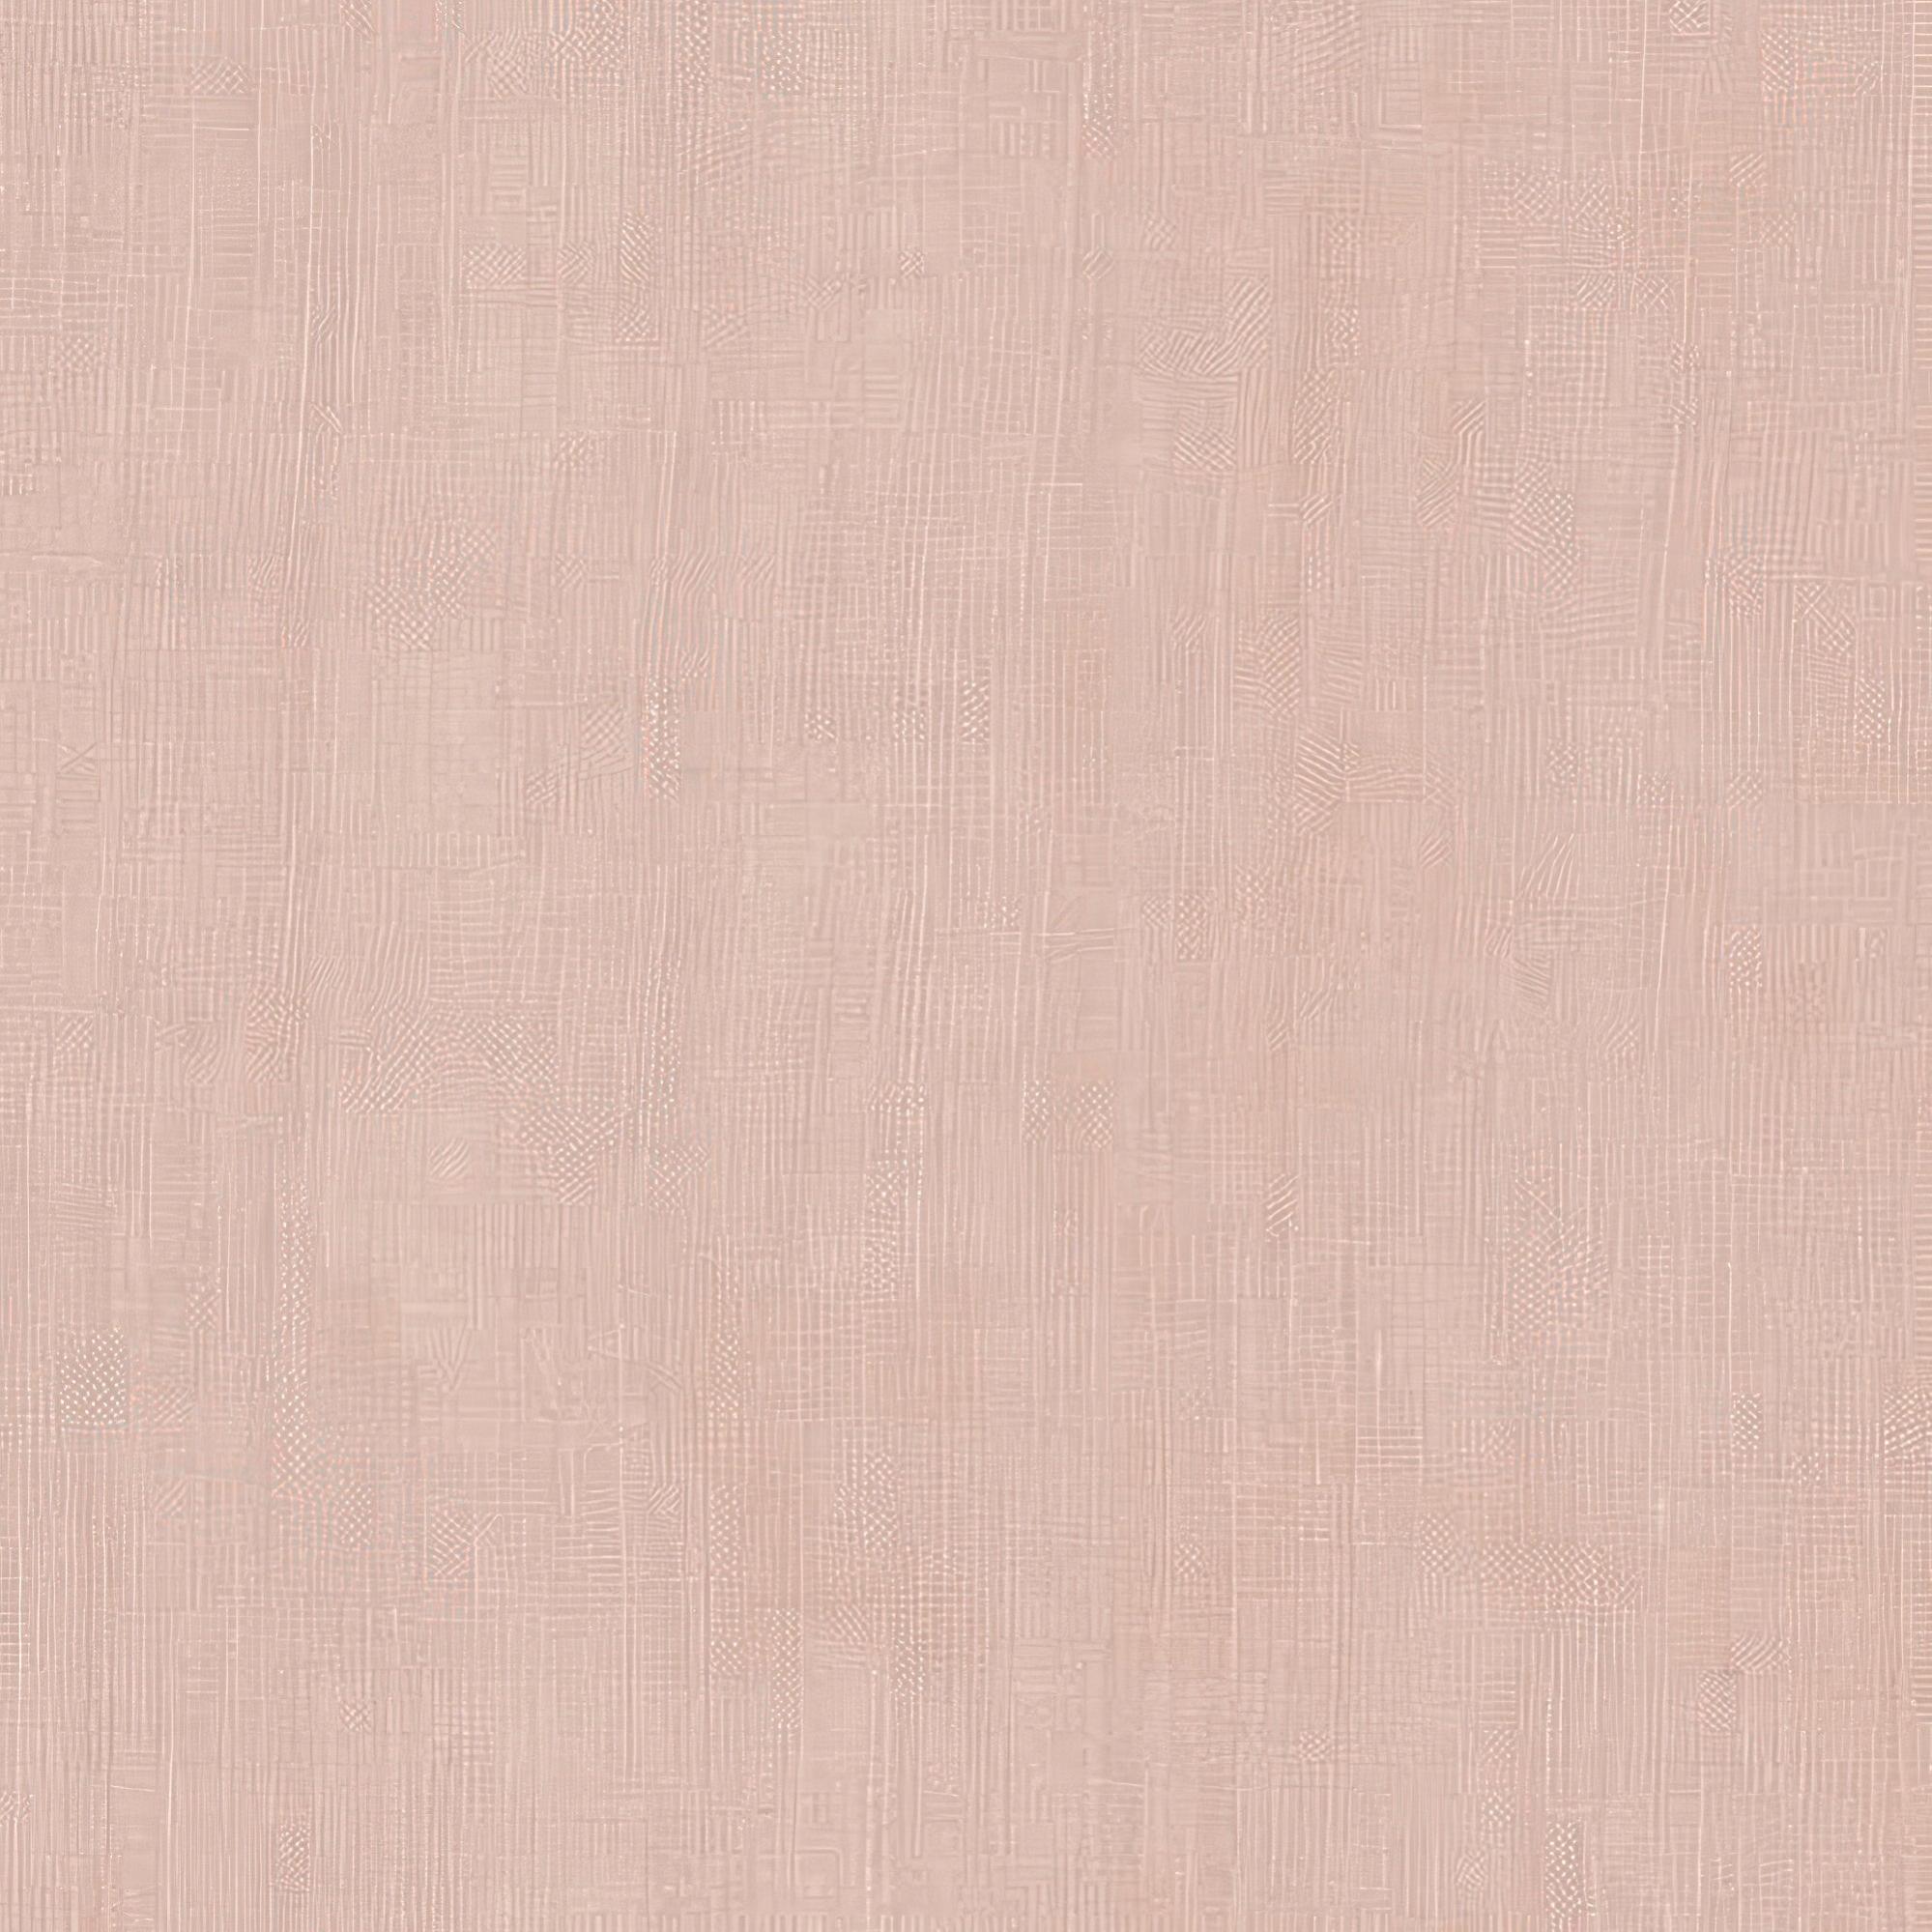 Visillo al corte lino smart berlin rosa ancho 300 cm